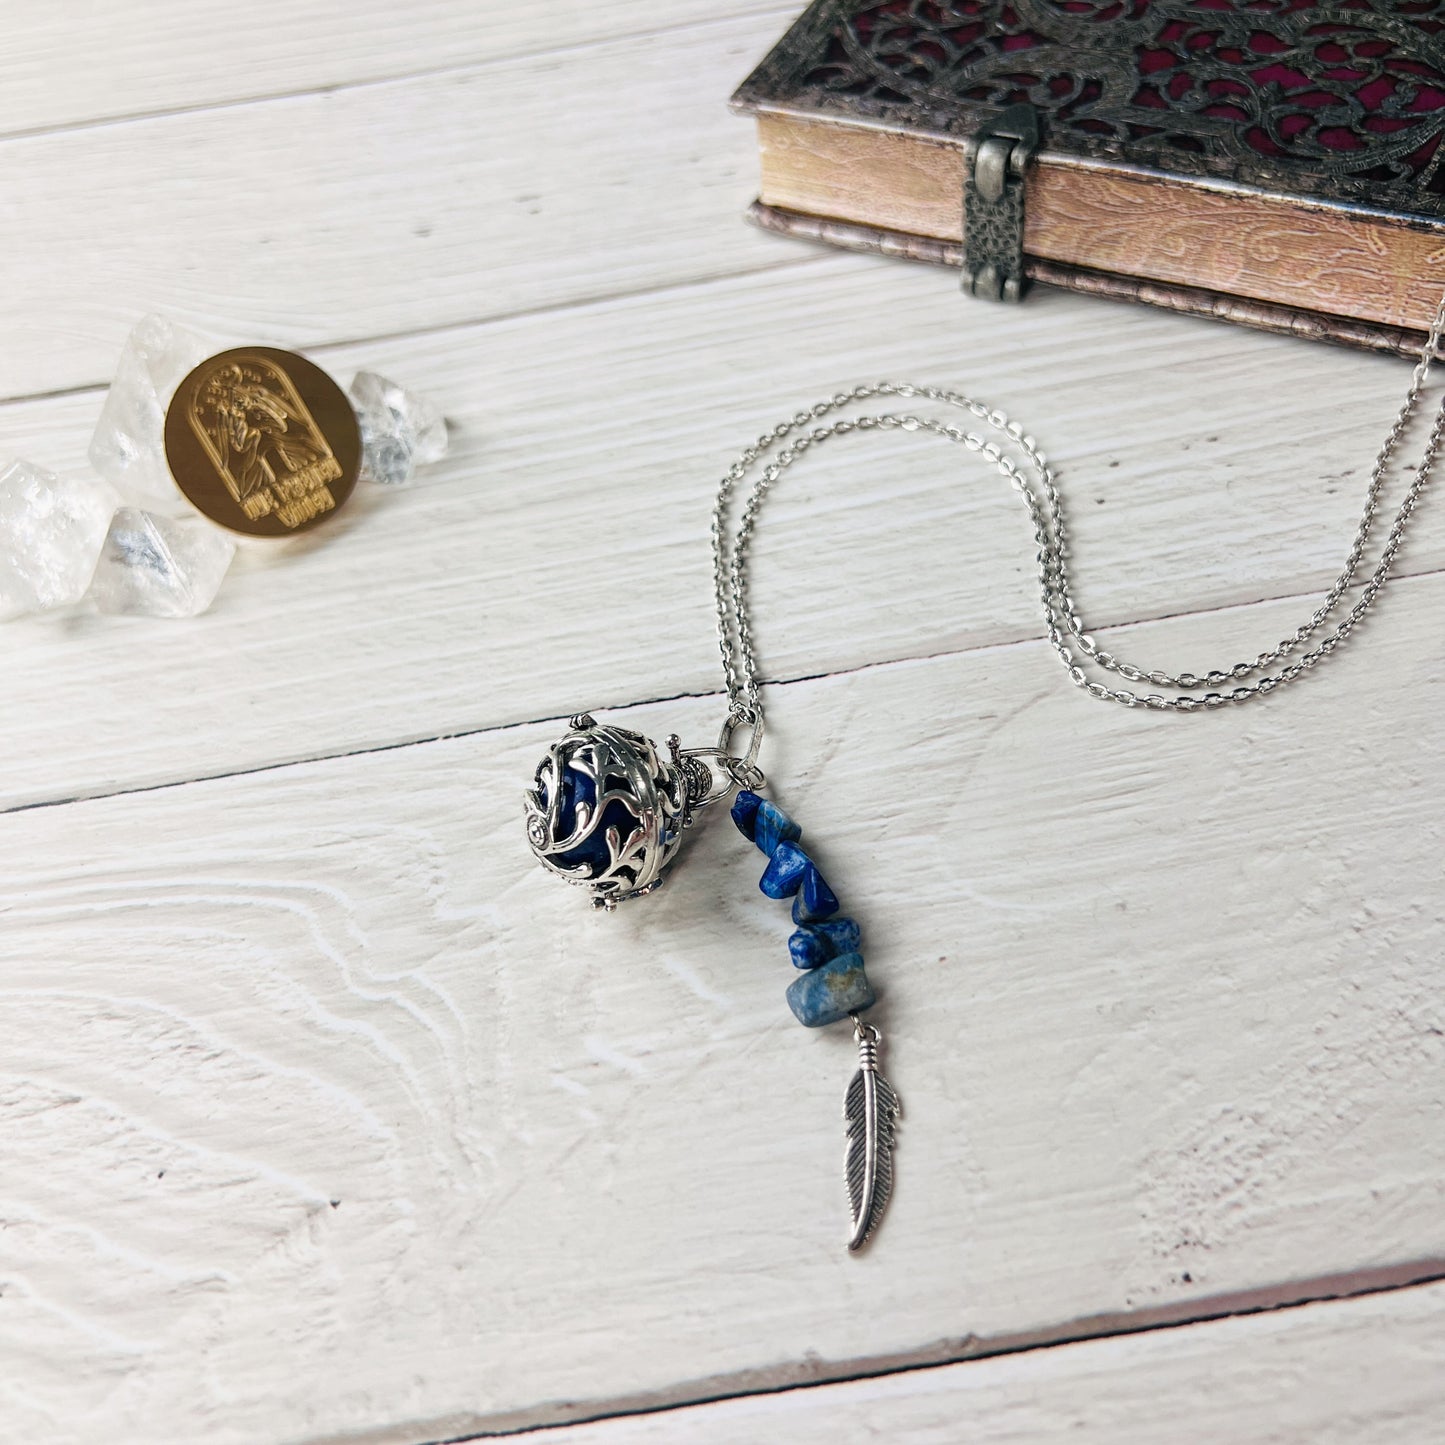 Lapis lazuli locket necklace Baguette Magick